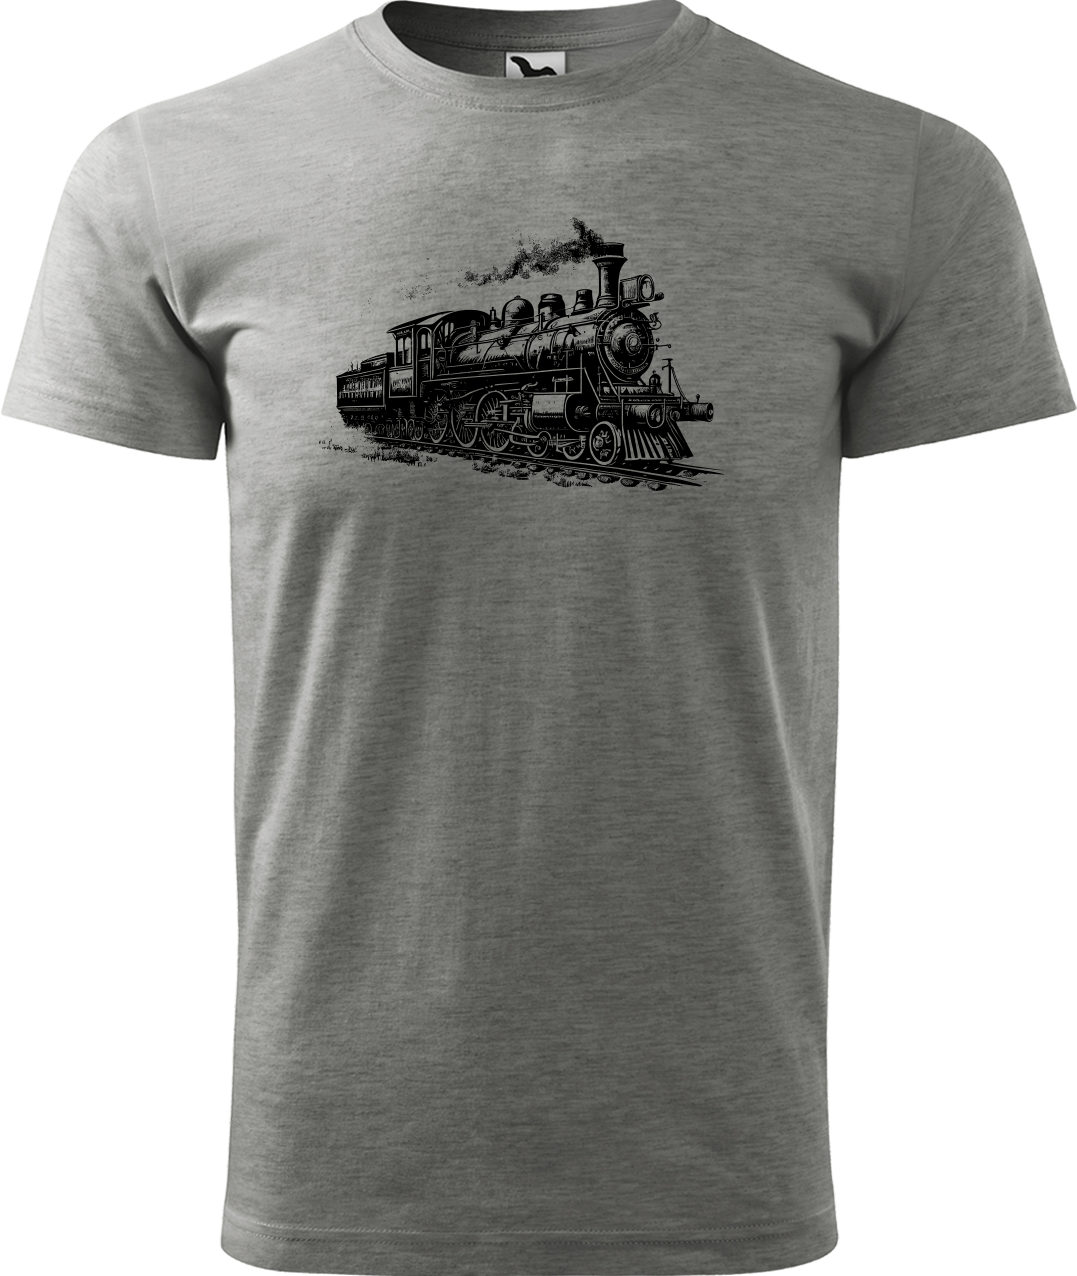 Tričko s vlakem - Stará lokomotiva Velikost: M, Barva: Tmavě šedý melír (12)